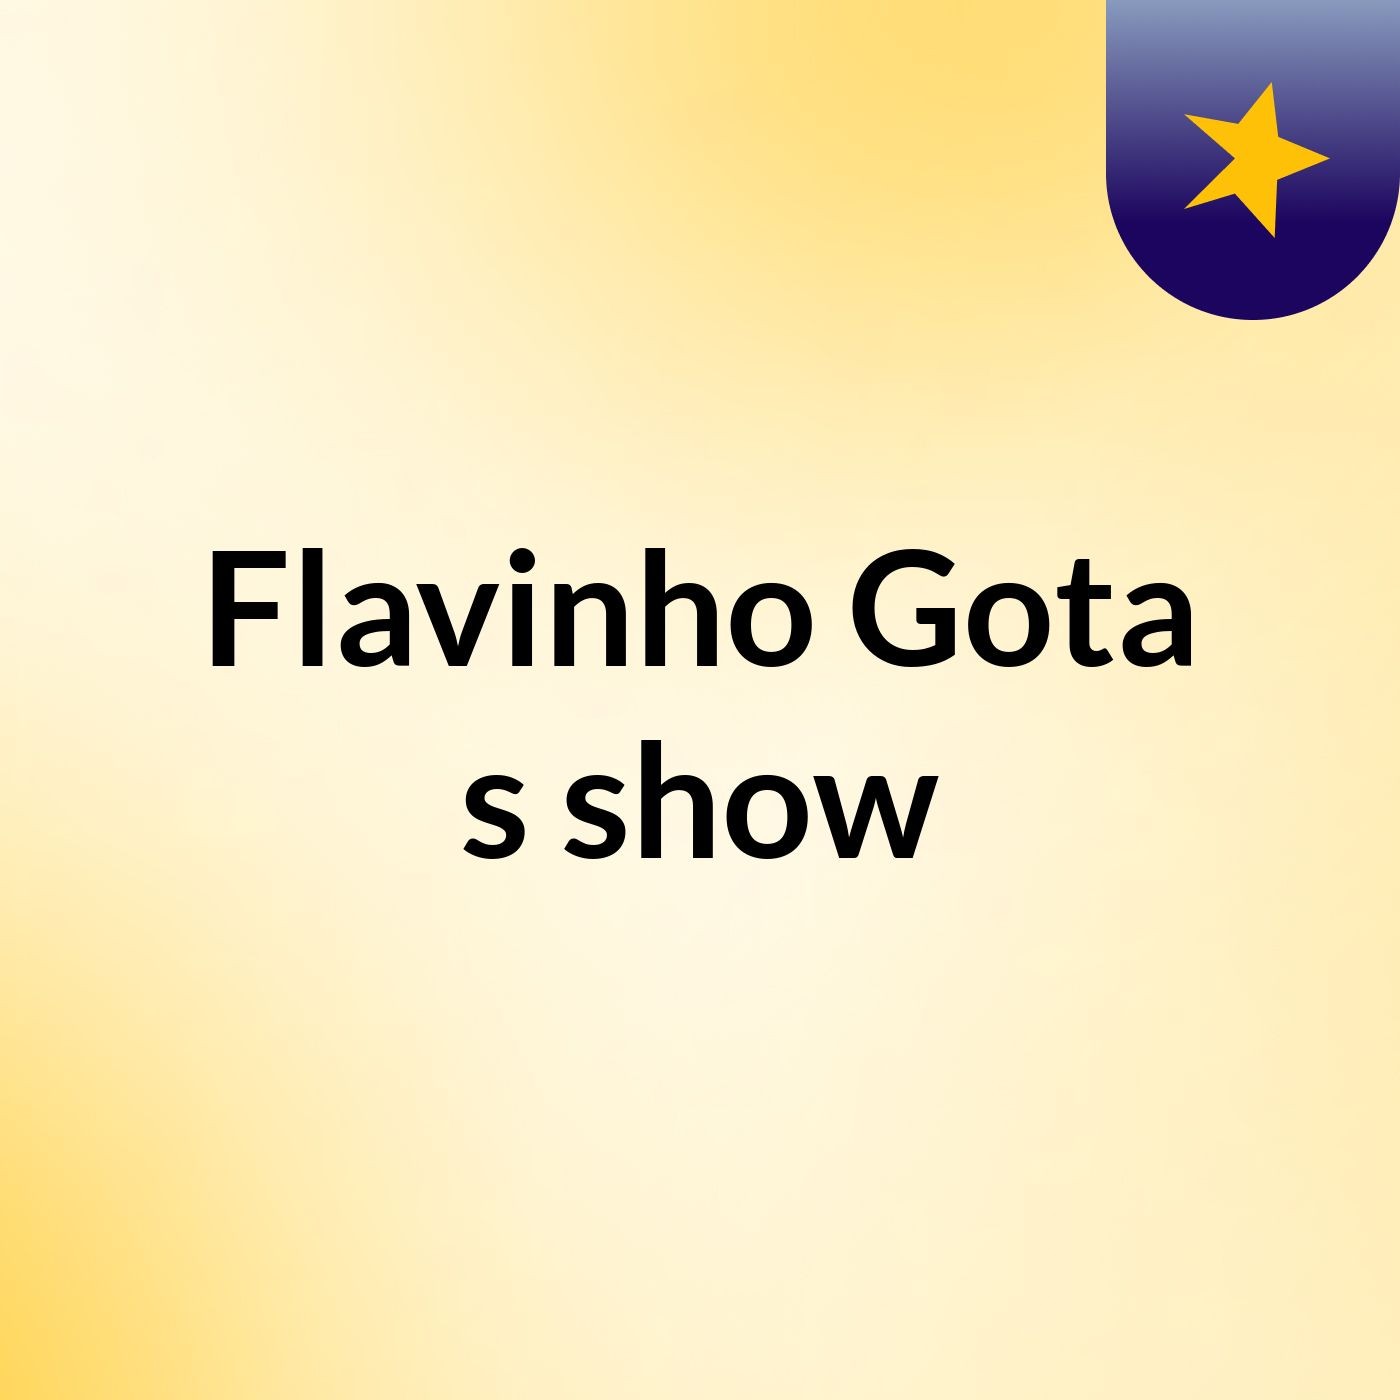 Flavinho Gota's show